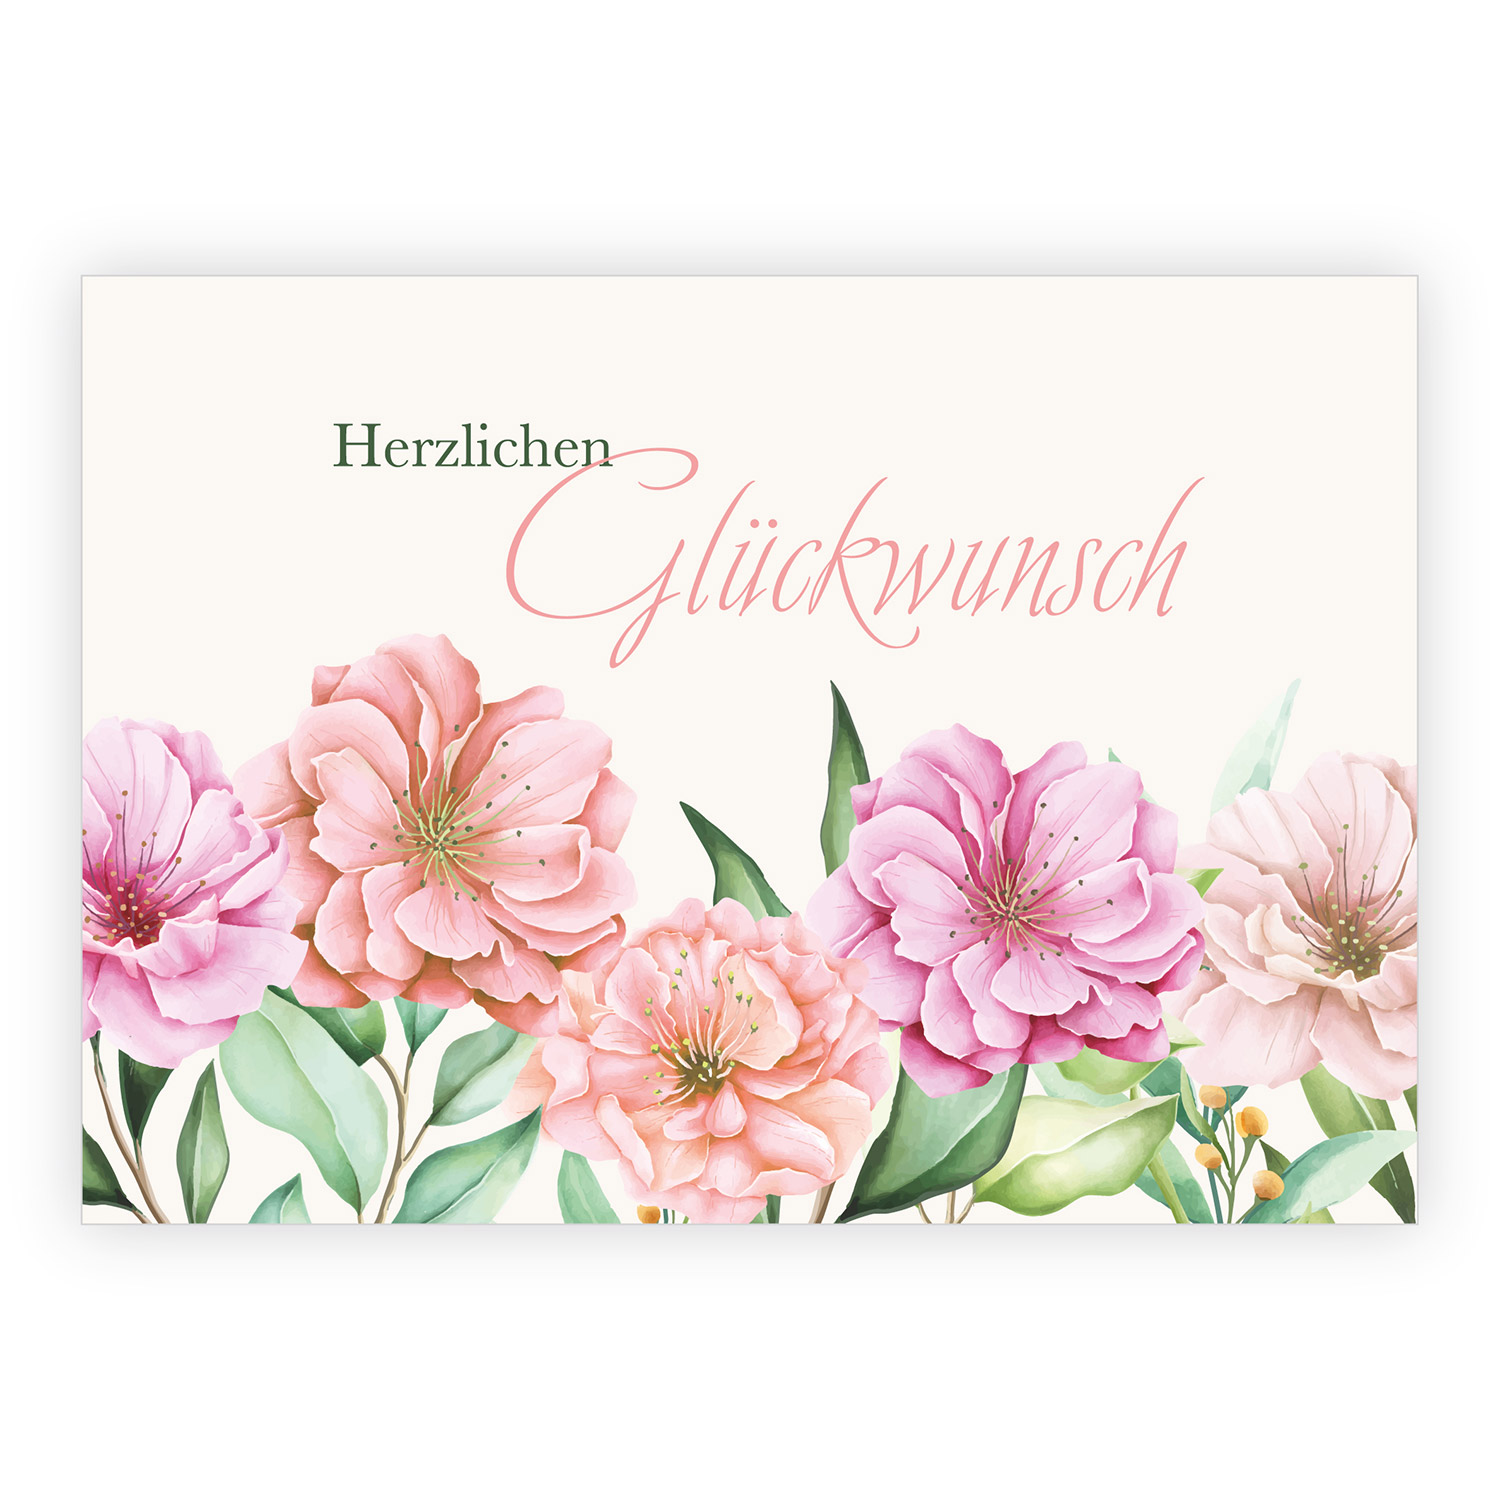 Stilvolle hochwertige Grußkarte:  Herzlichen Glückwunsch 1 nachhaltig produzierte Klappkarte inklusive Umschlag  made in germany von Kartenkaufrausch.de